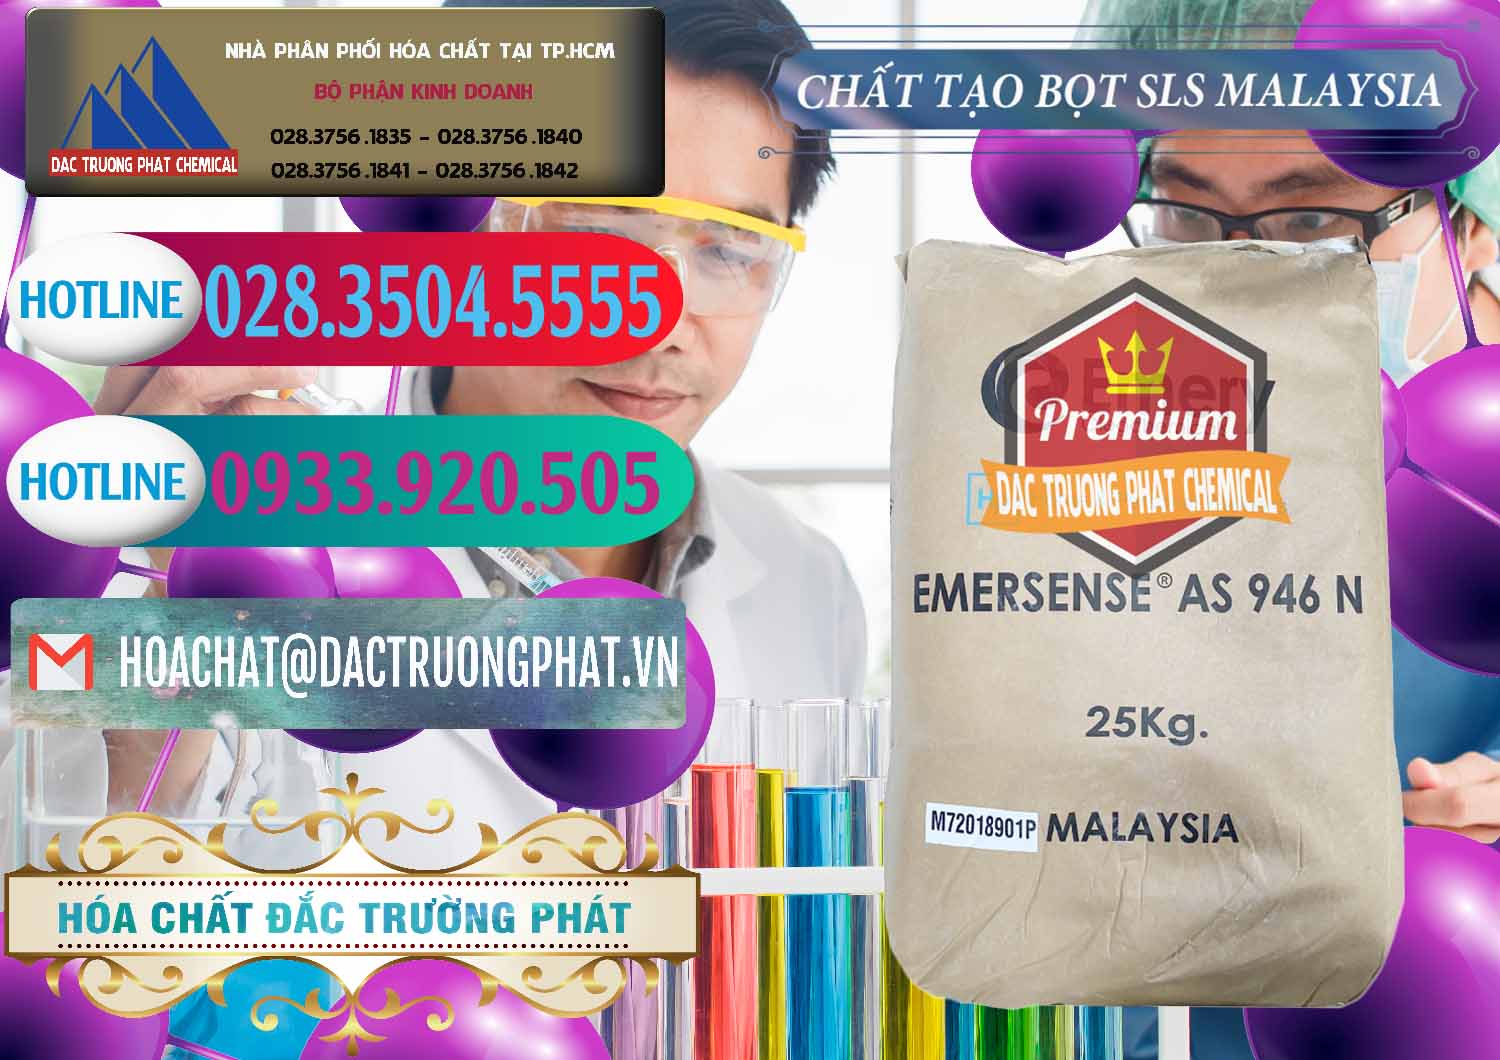 Phân phối & bán Chất Tạo Bọt SLS Emery - Emersense AS 946N Mã Lai Malaysia - 0423 - Đơn vị nhập khẩu - phân phối hóa chất tại TP.HCM - truongphat.vn